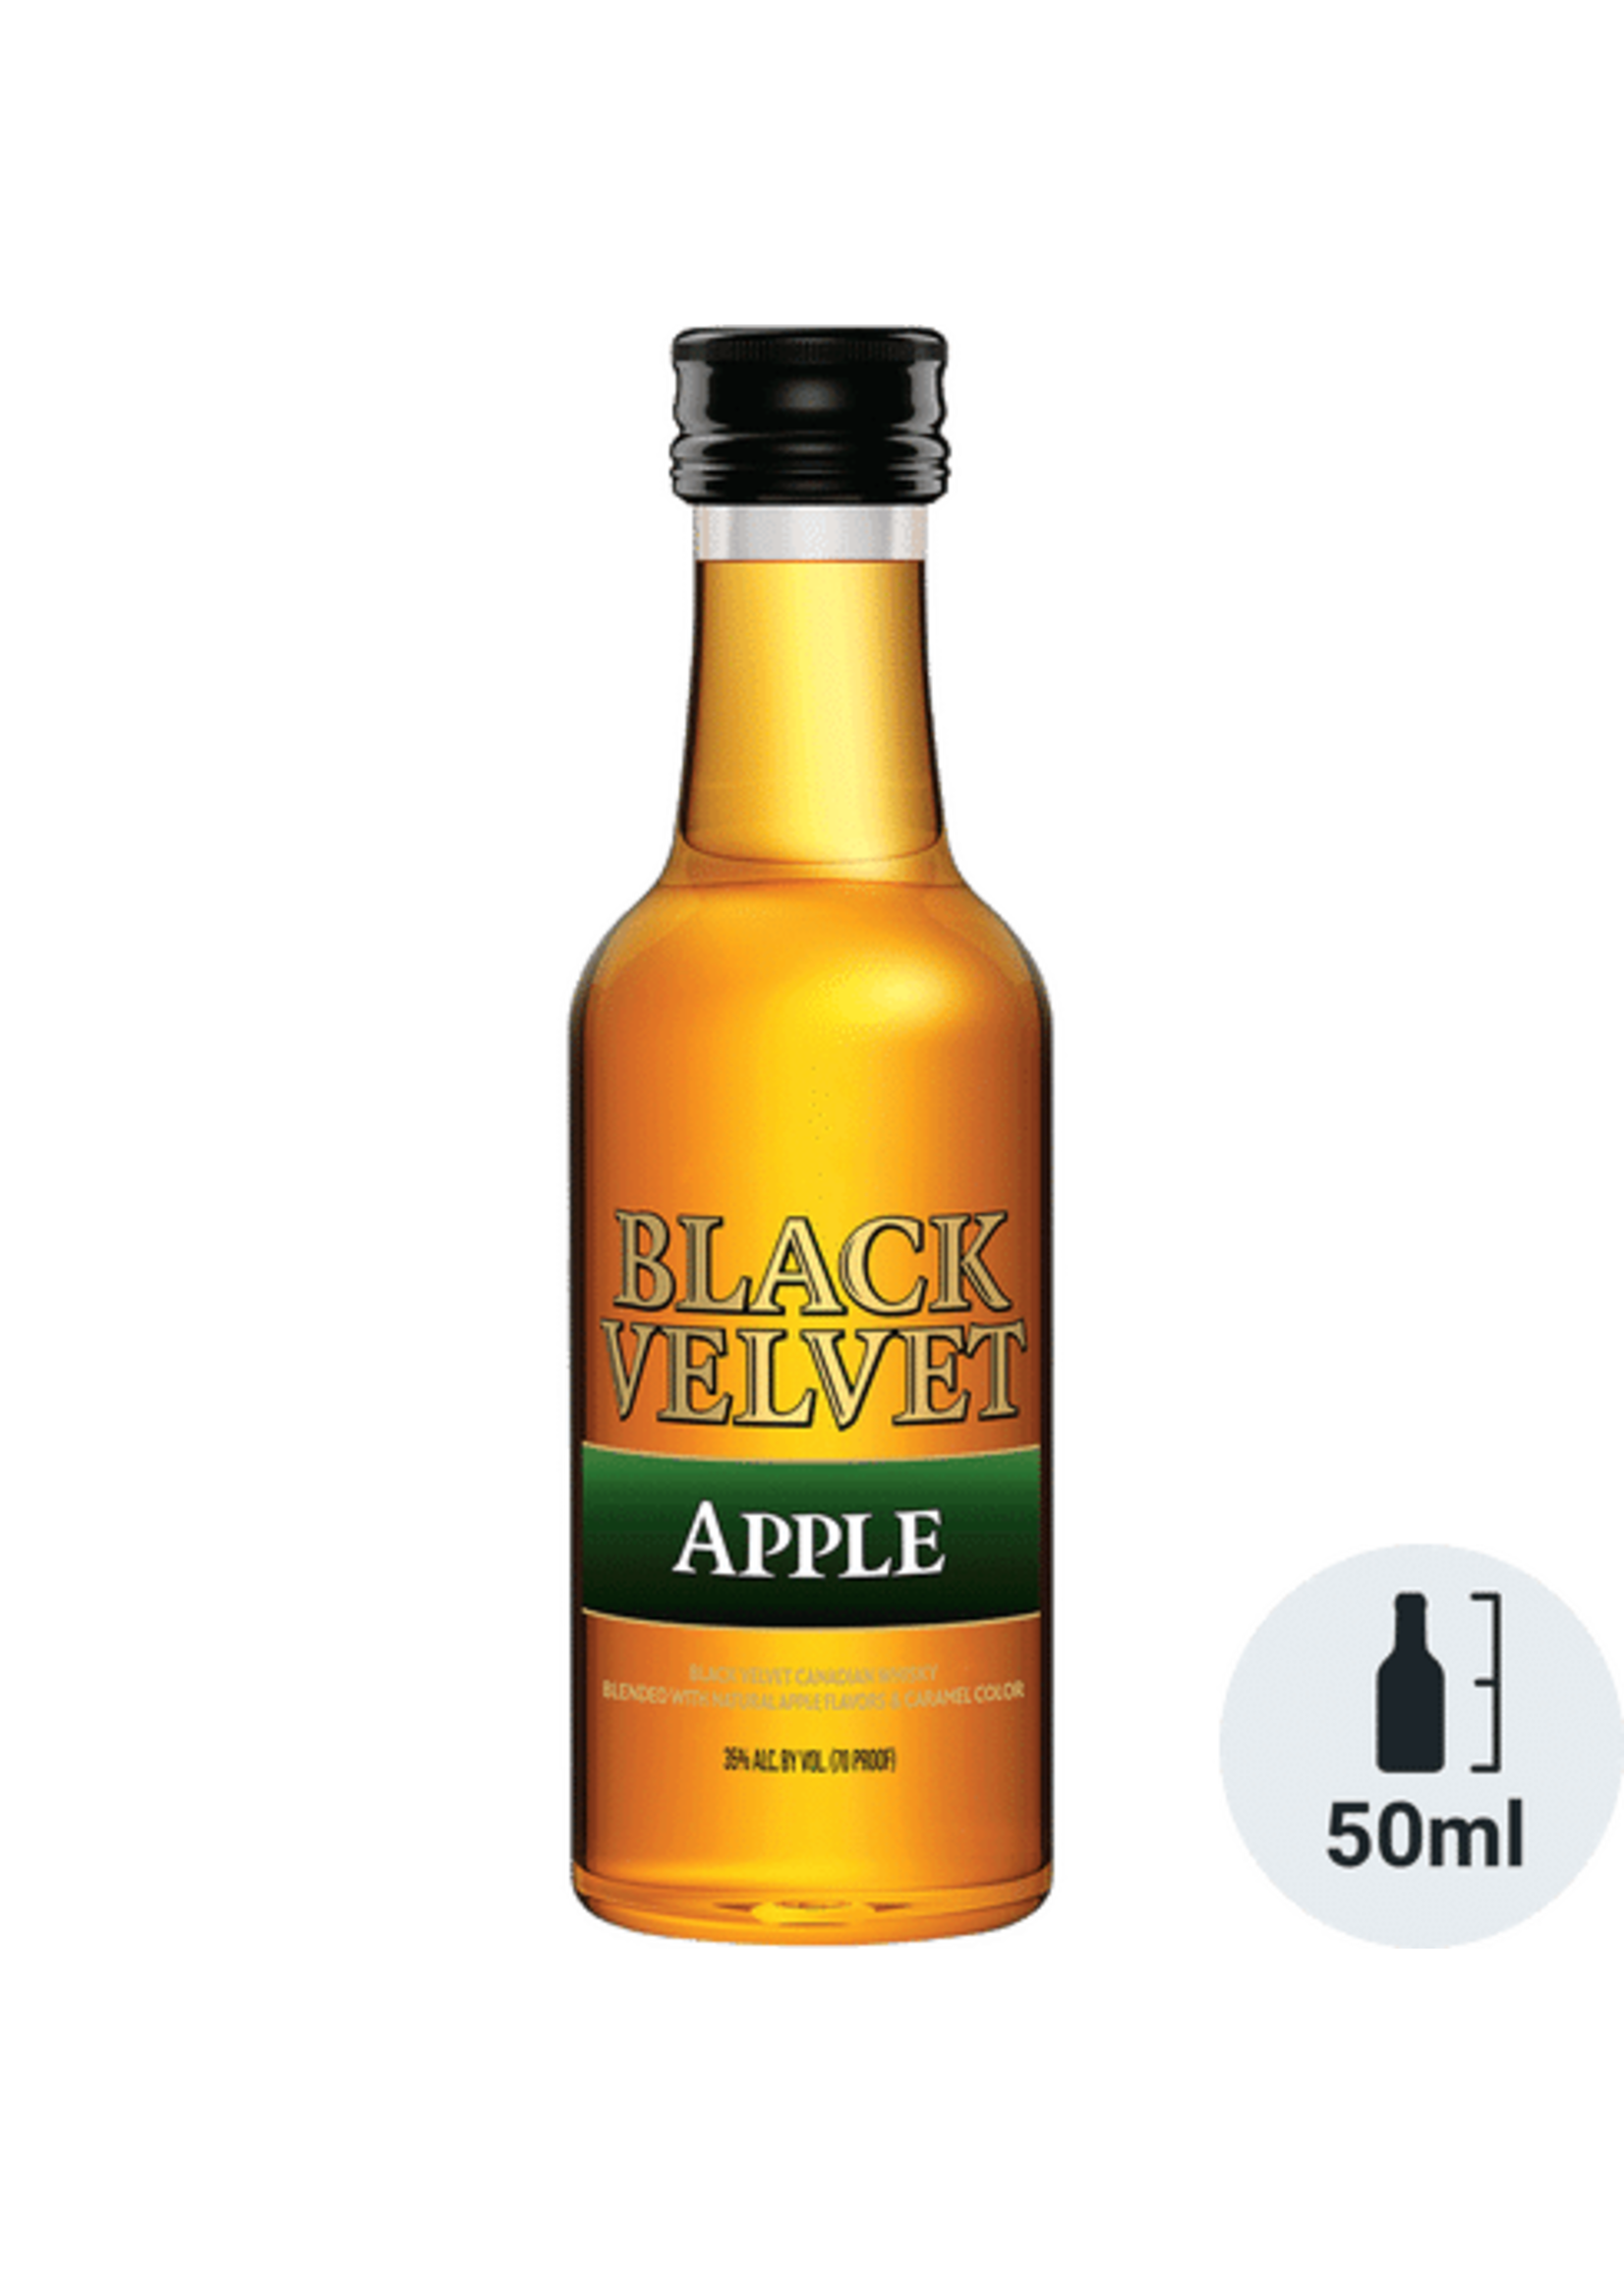 Black Velvet Apple Flavored Whisky 70Proof Pet 50ml